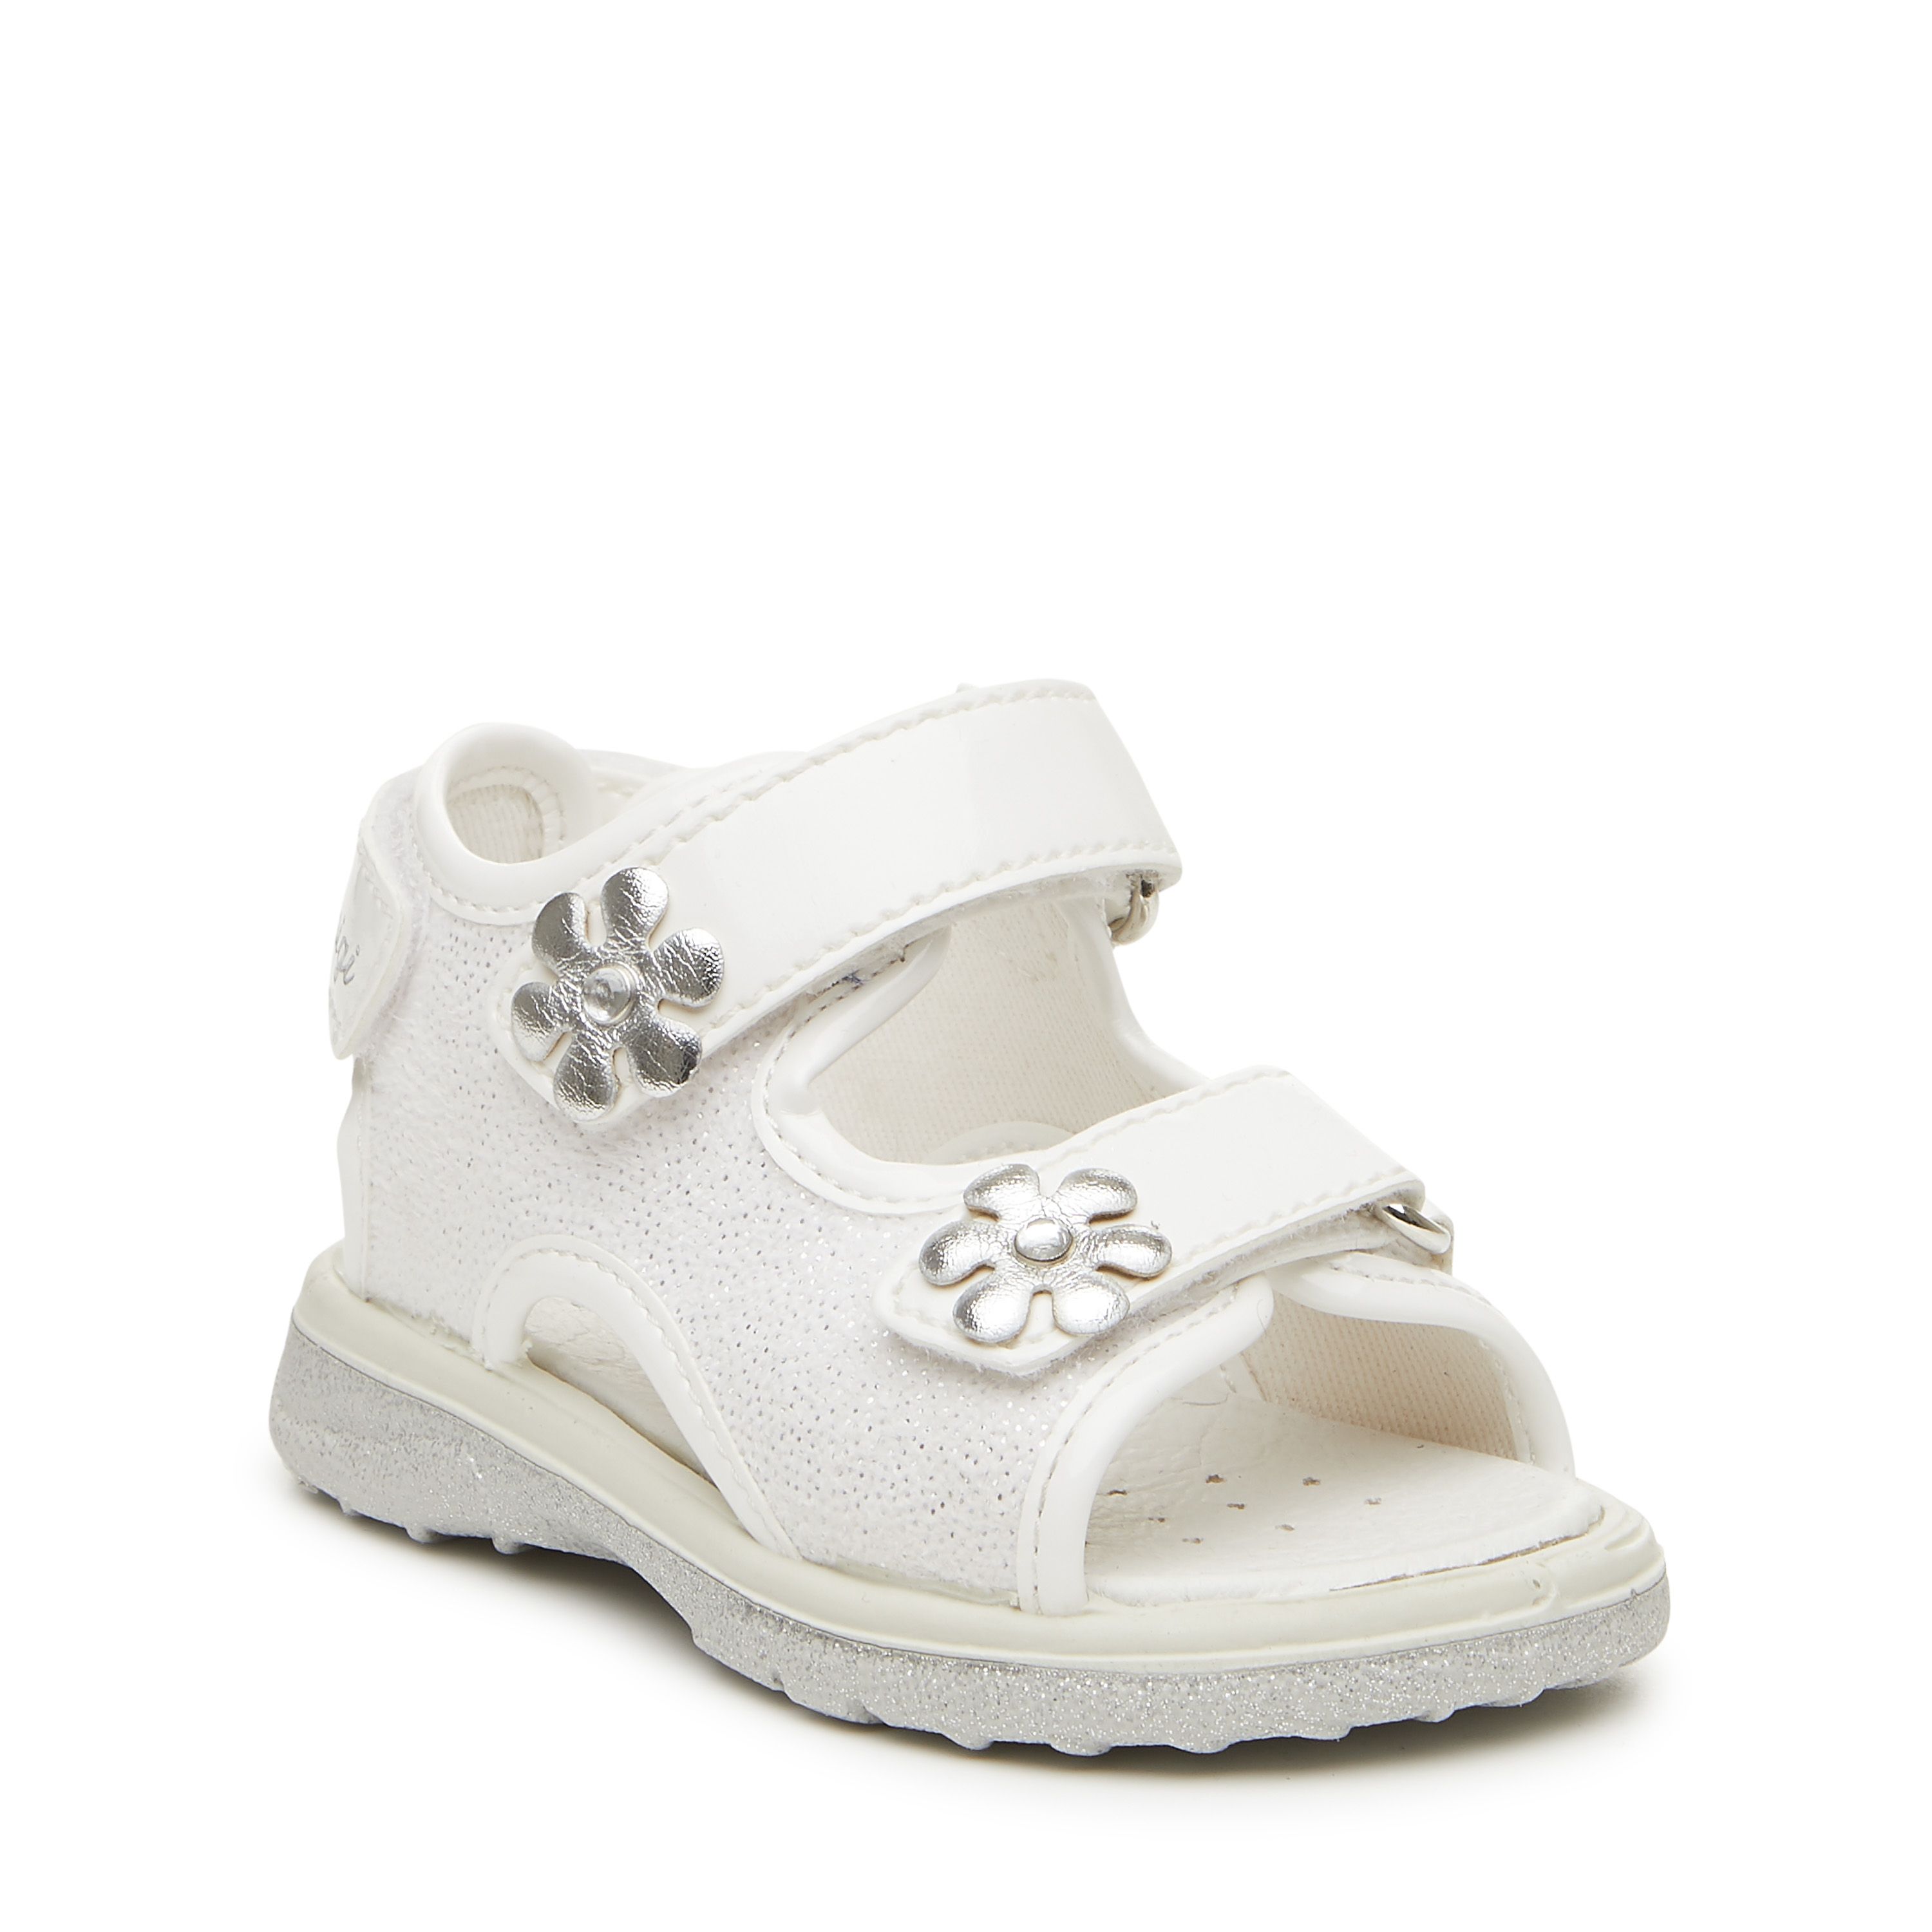 Scarpe da bambina sandali PRIMIGI in pelle e vernice bianca 3376900 | eBay